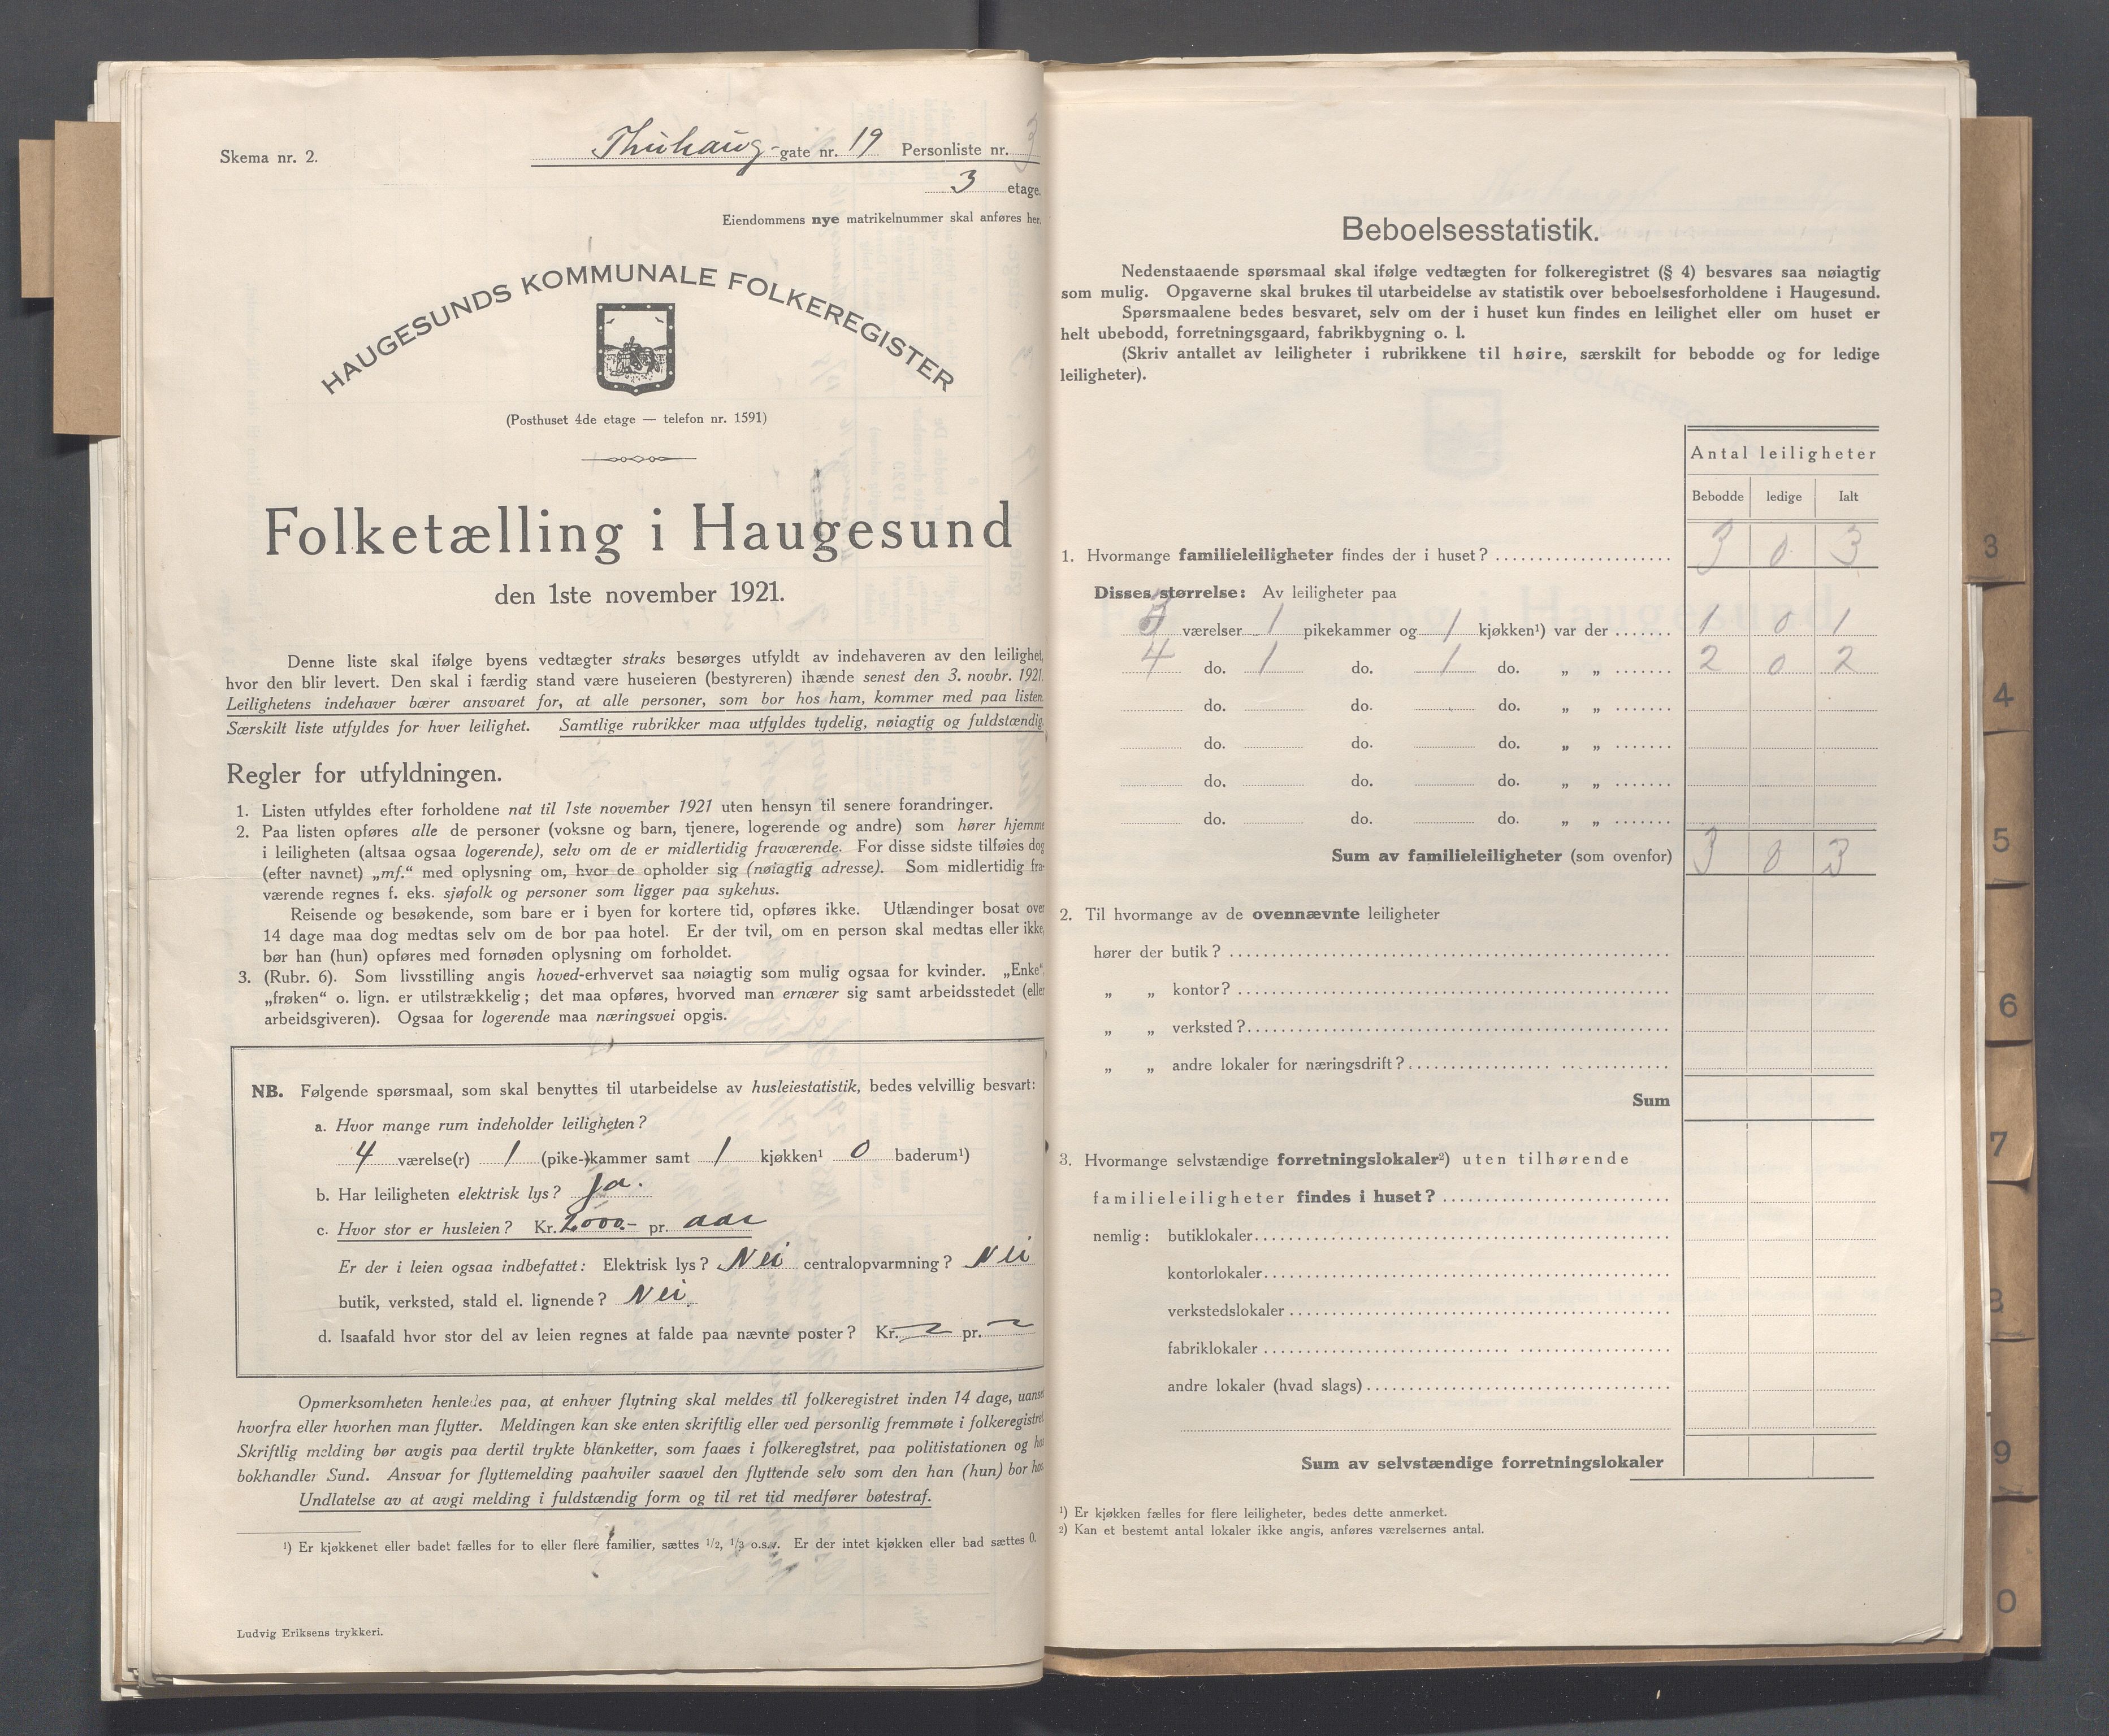 IKAR, Local census 1.11.1921 for Haugesund, 1921, p. 5431